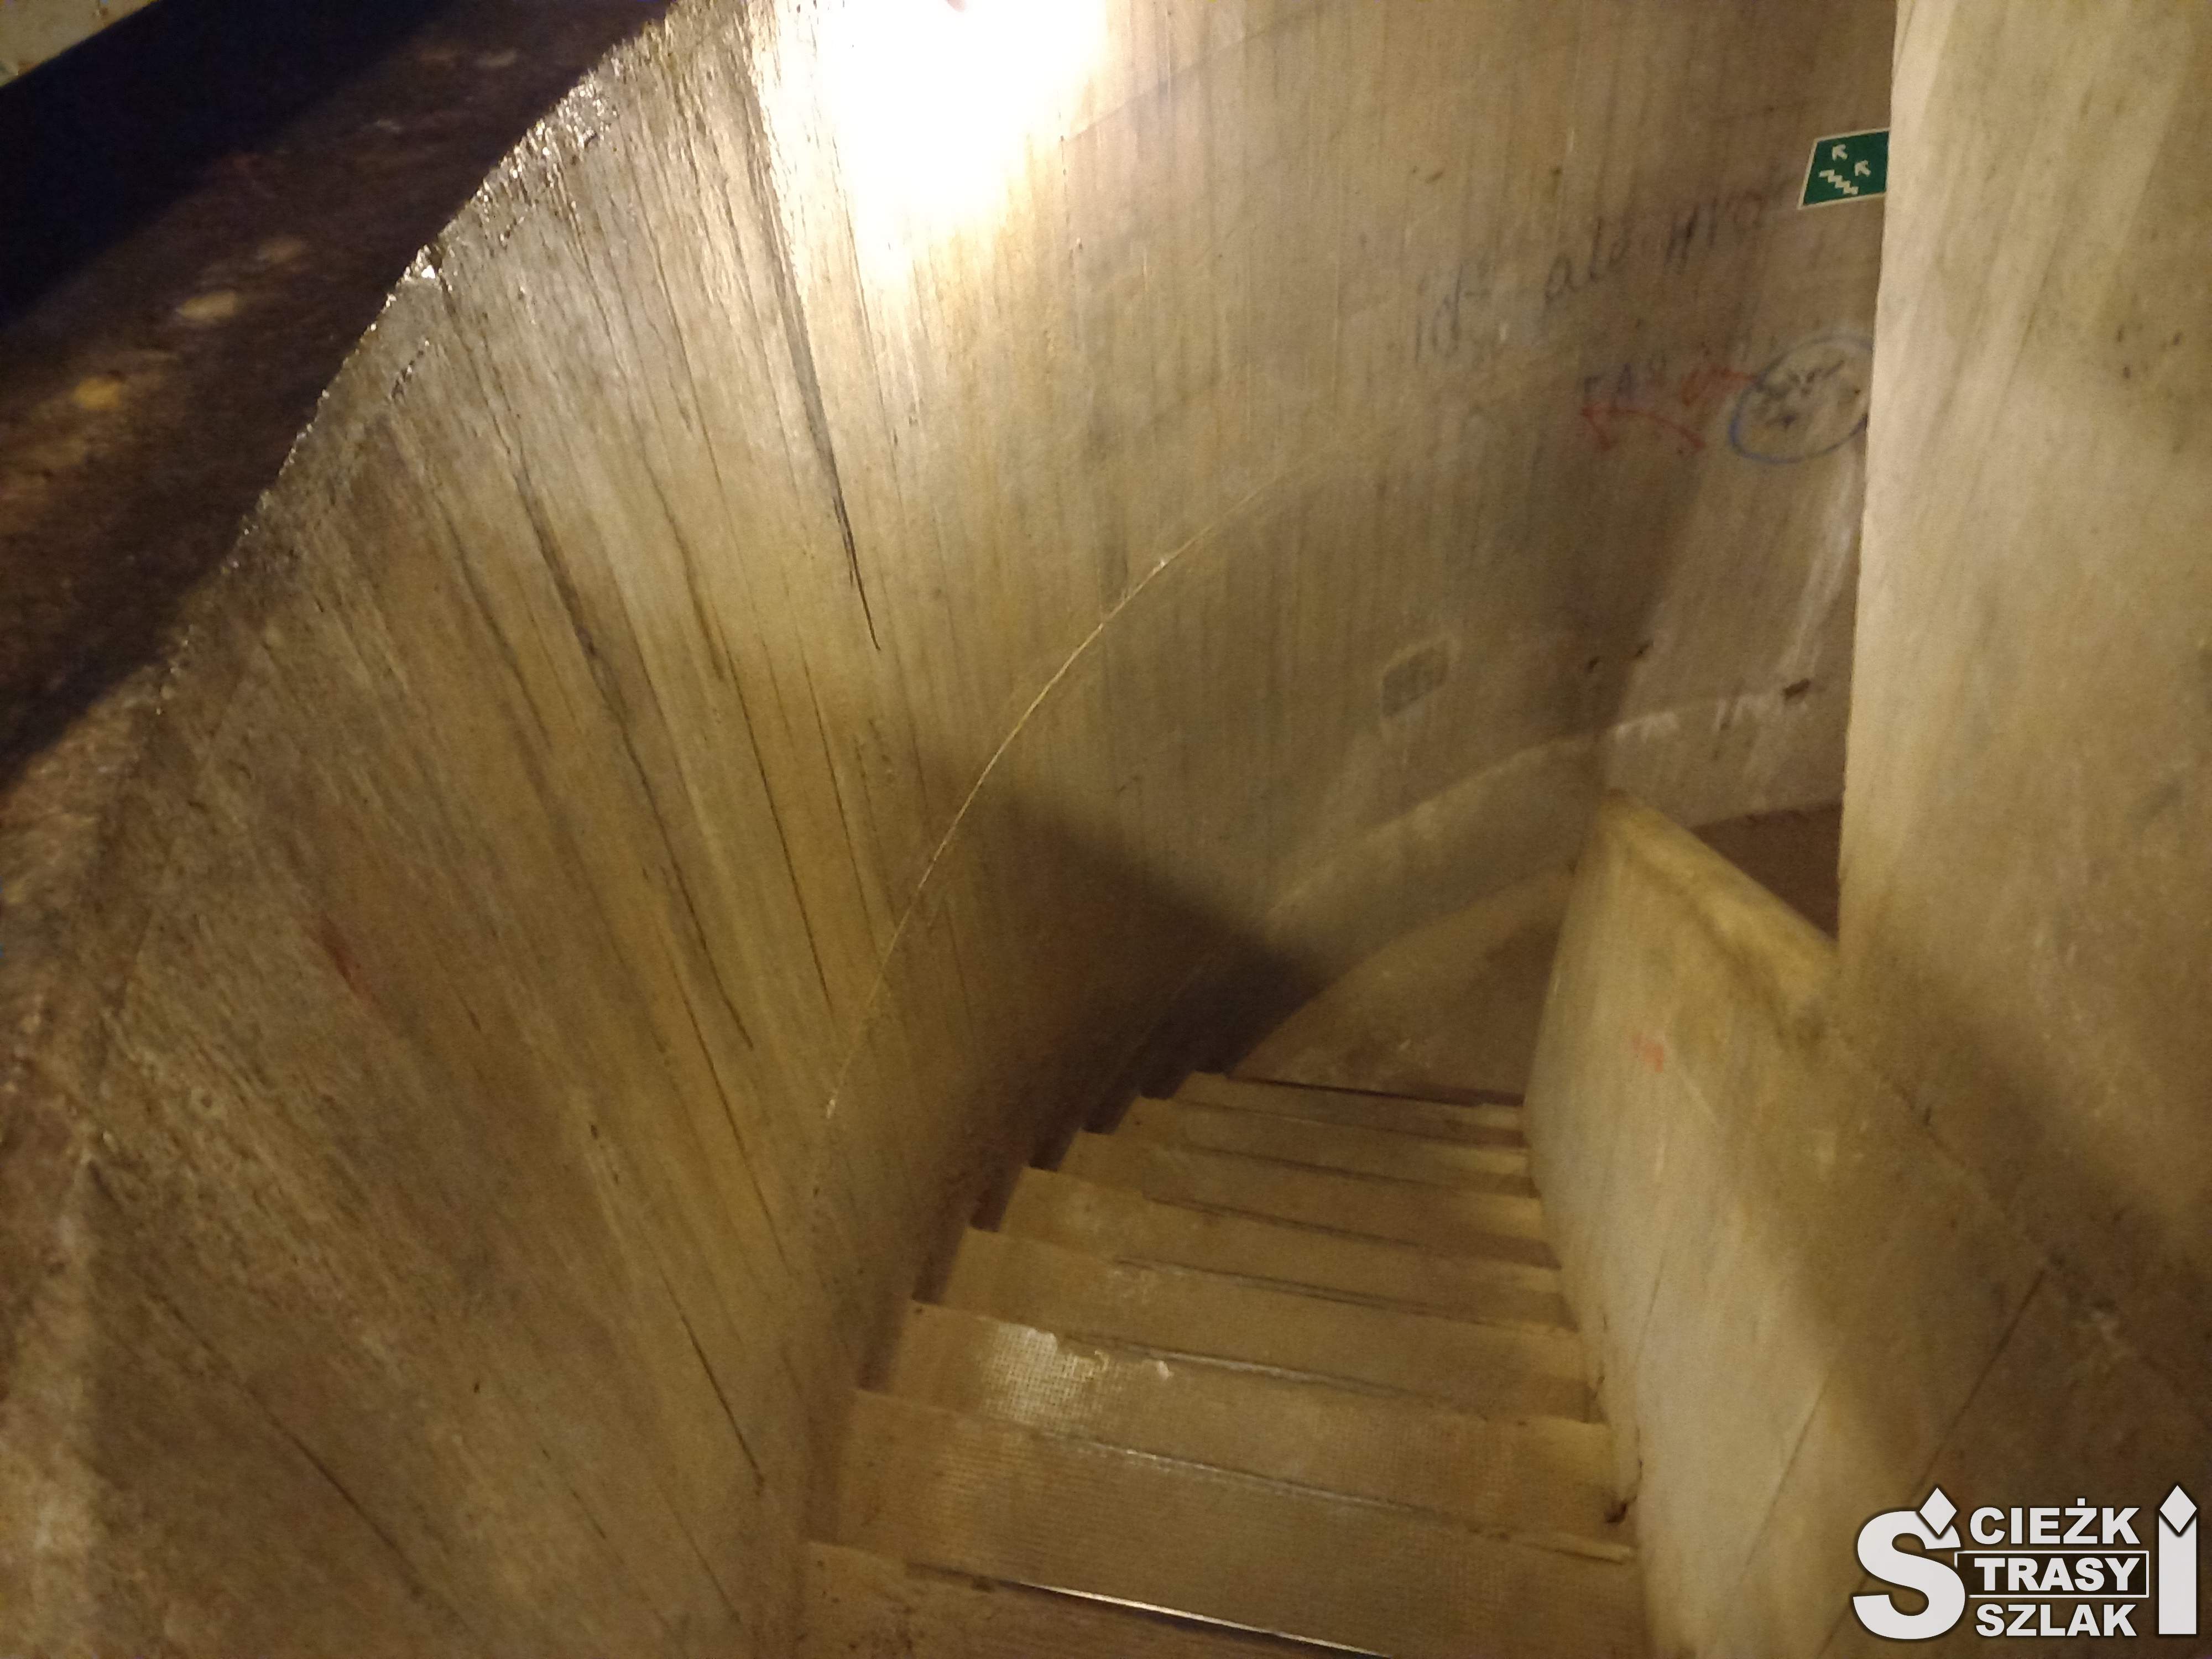 Schody prowadzące w głąb ziemi do niższego poziomu bunkrów wijące się w betonowym silosie